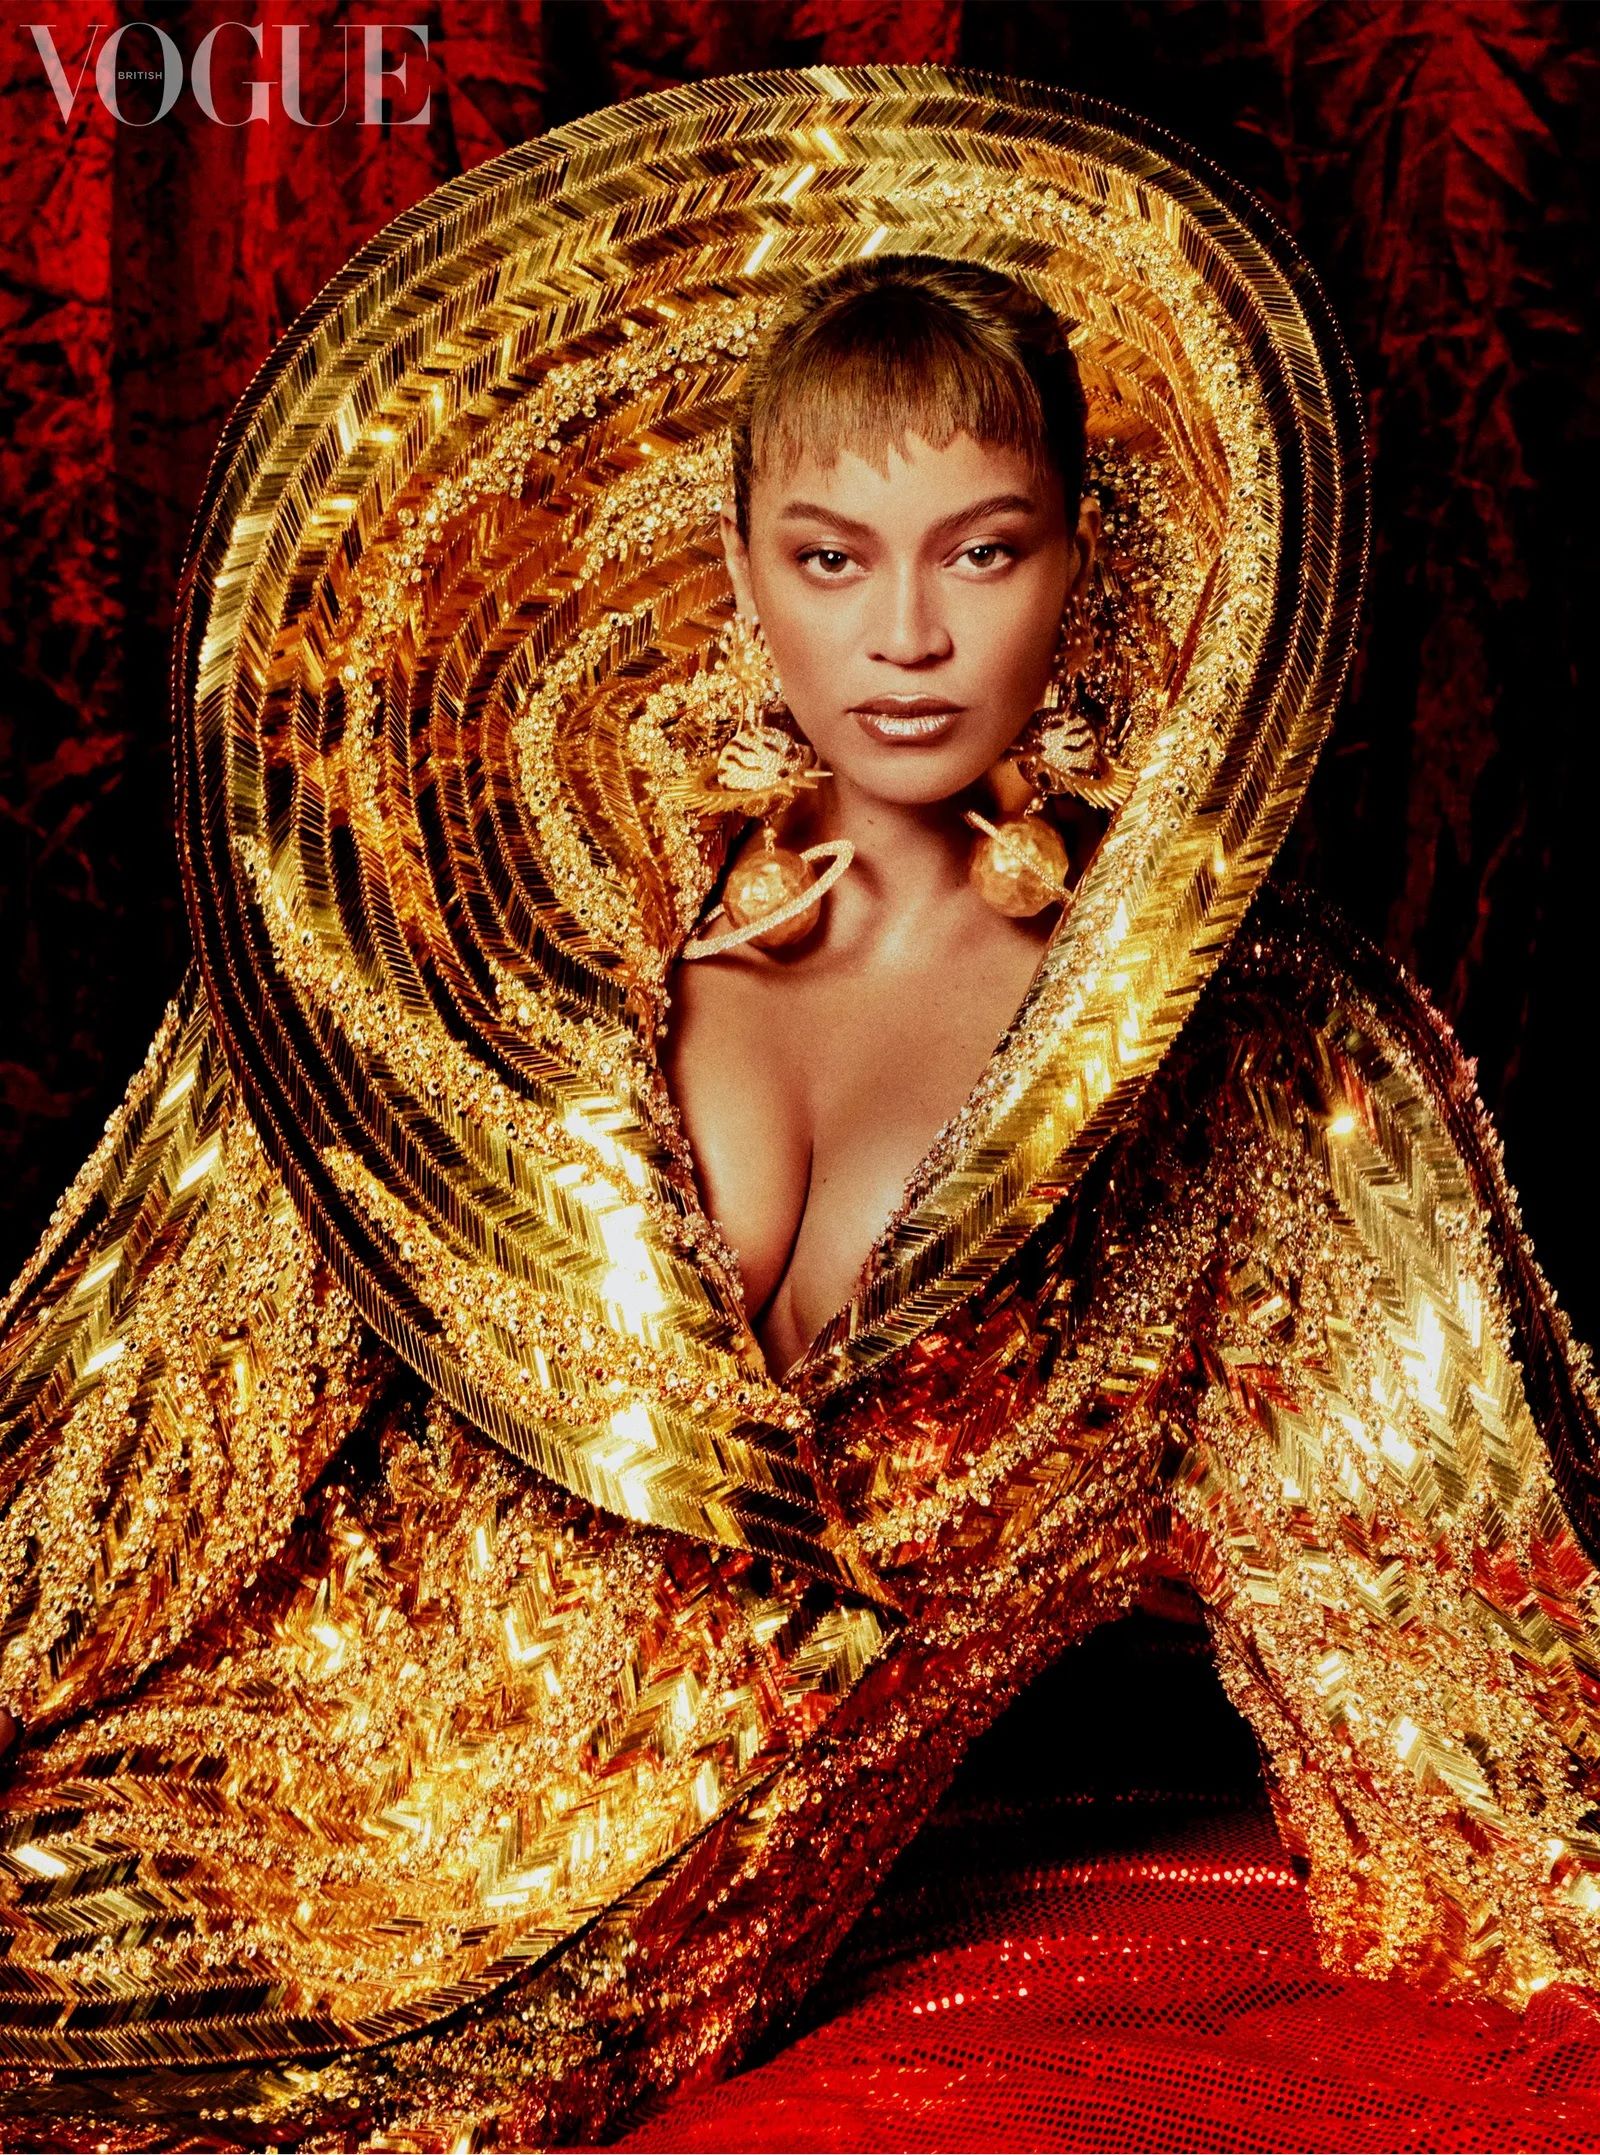 Jelang Rilis Album Baru, Beyoncé Tampil Seksi di Pemotretan Majalah